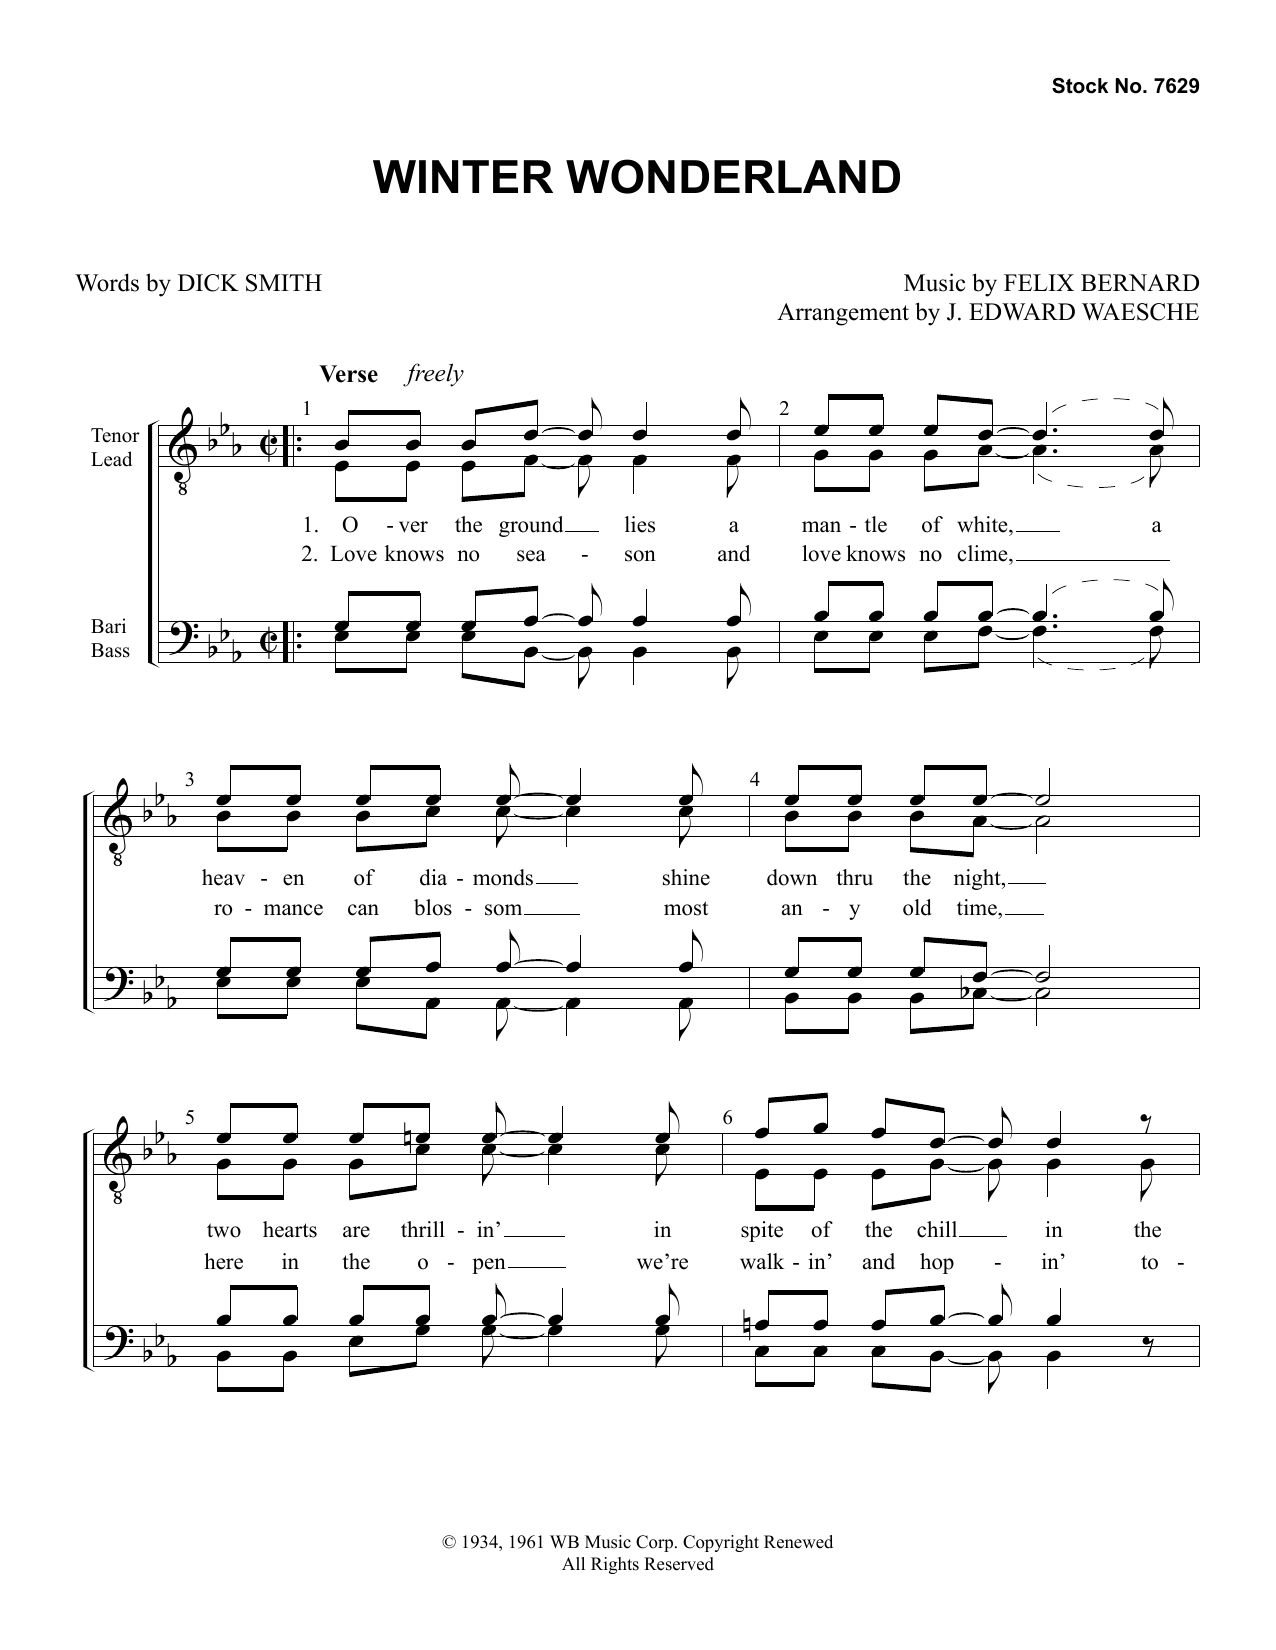 Dick Smith & Felix Bernard Winter Wonderland (arr. Ed Waesche) Sheet Music Notes & Chords for TTBB Choir - Download or Print PDF